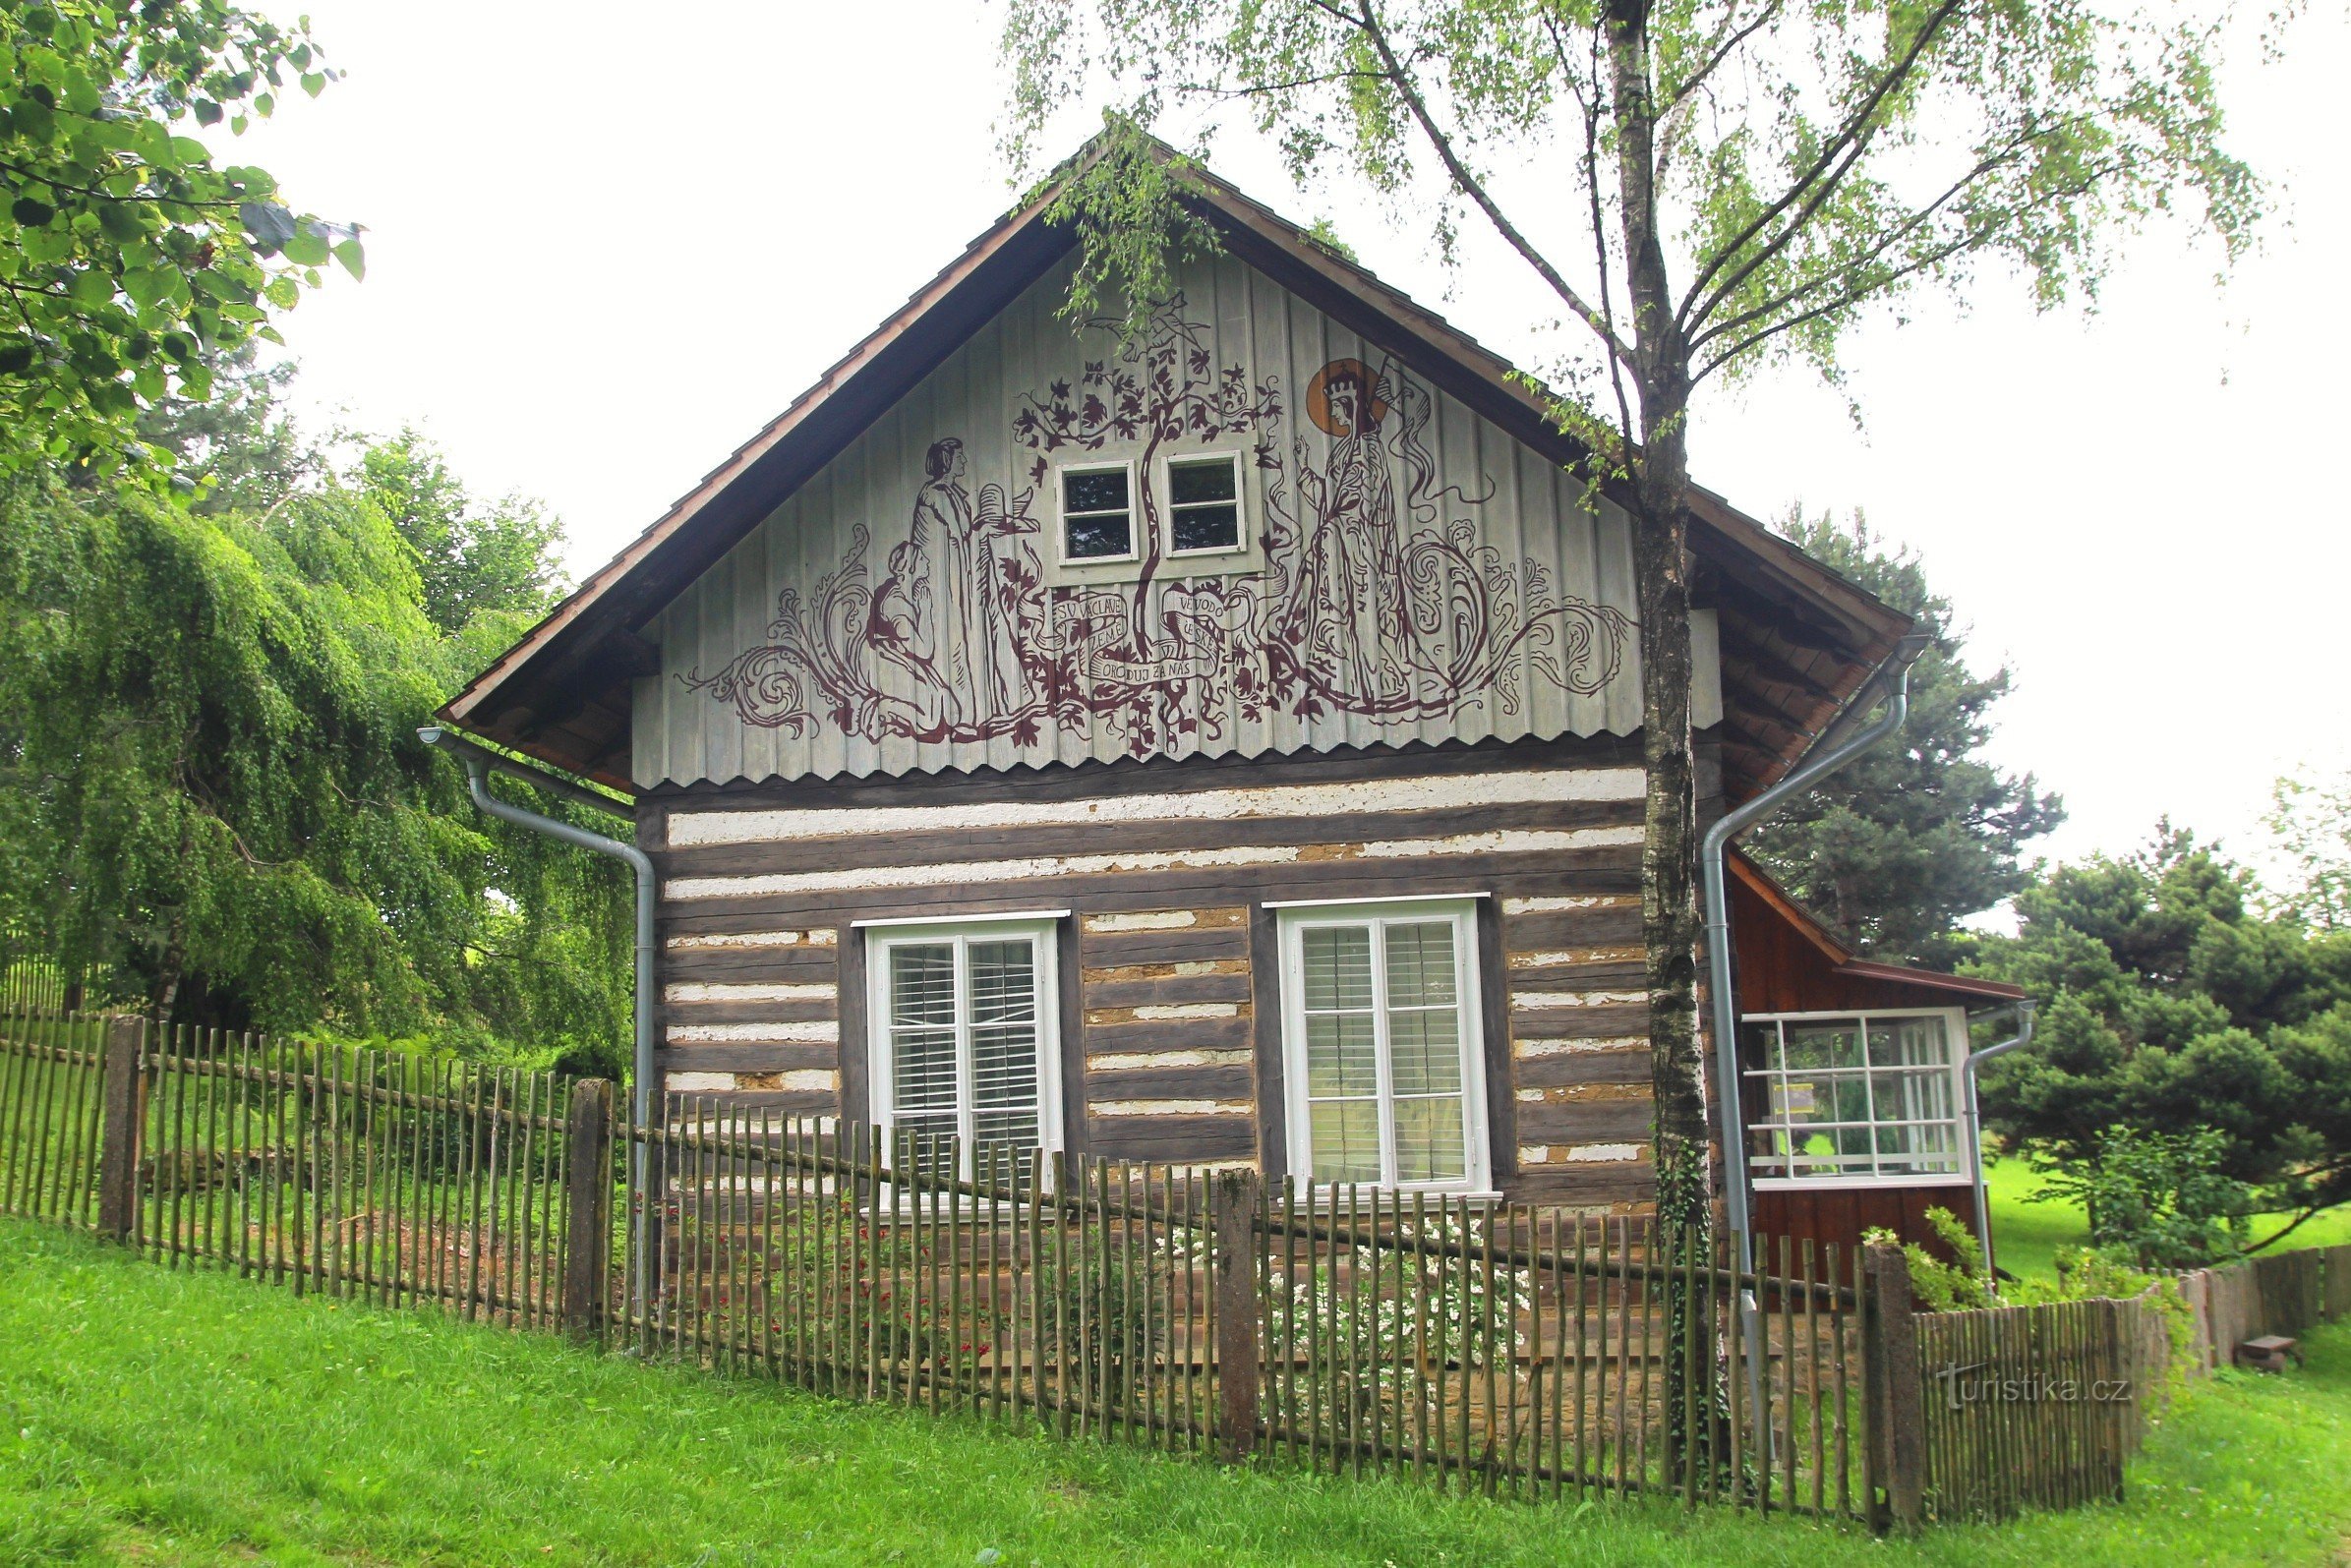 Kozlov - casa de campo de Max Švabinský, verão de 2013